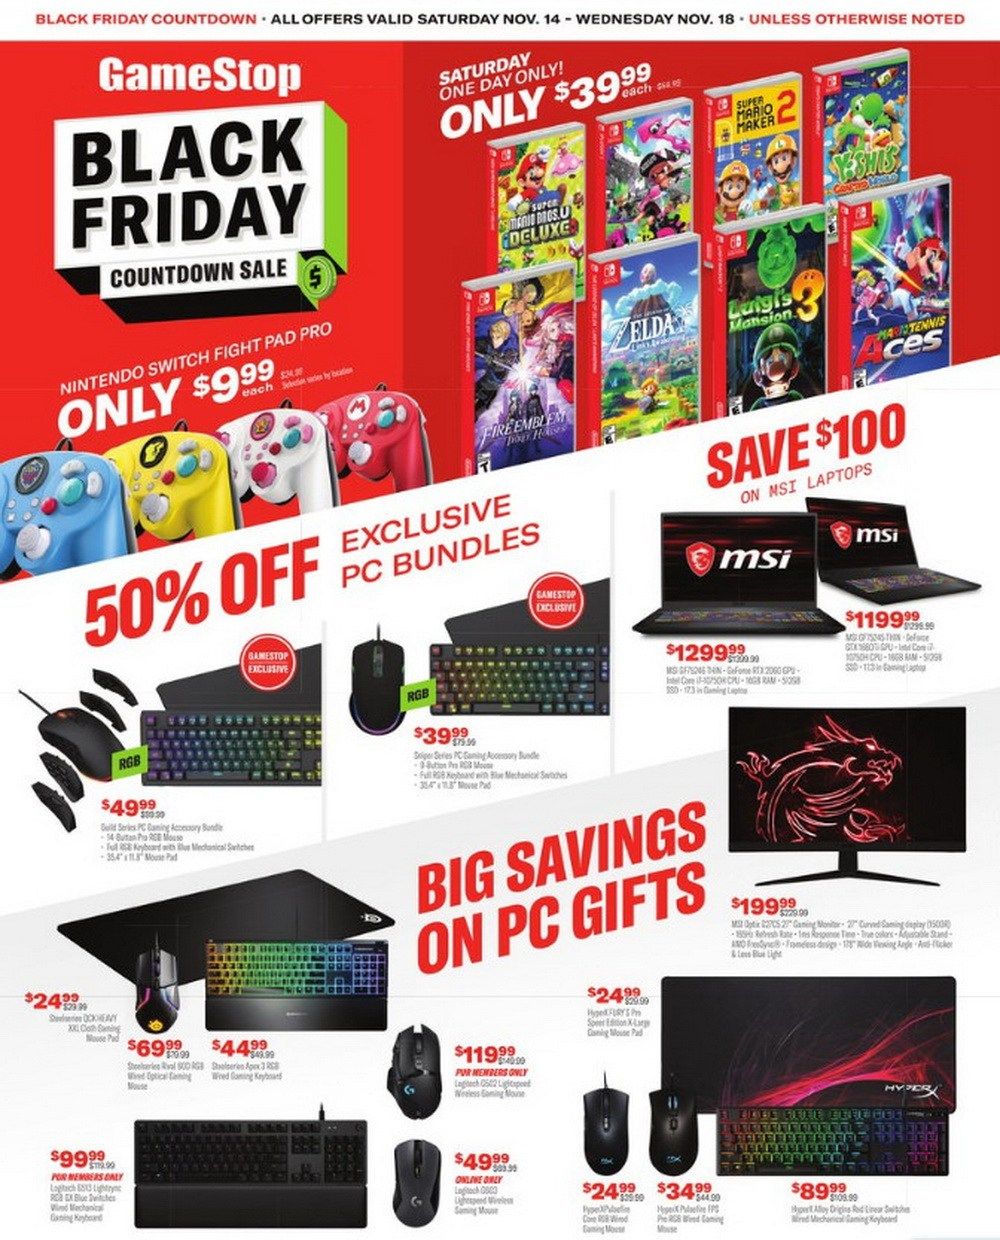 GameStop Black Friday Countdown Ad Nov 14 Nov 18, 2020